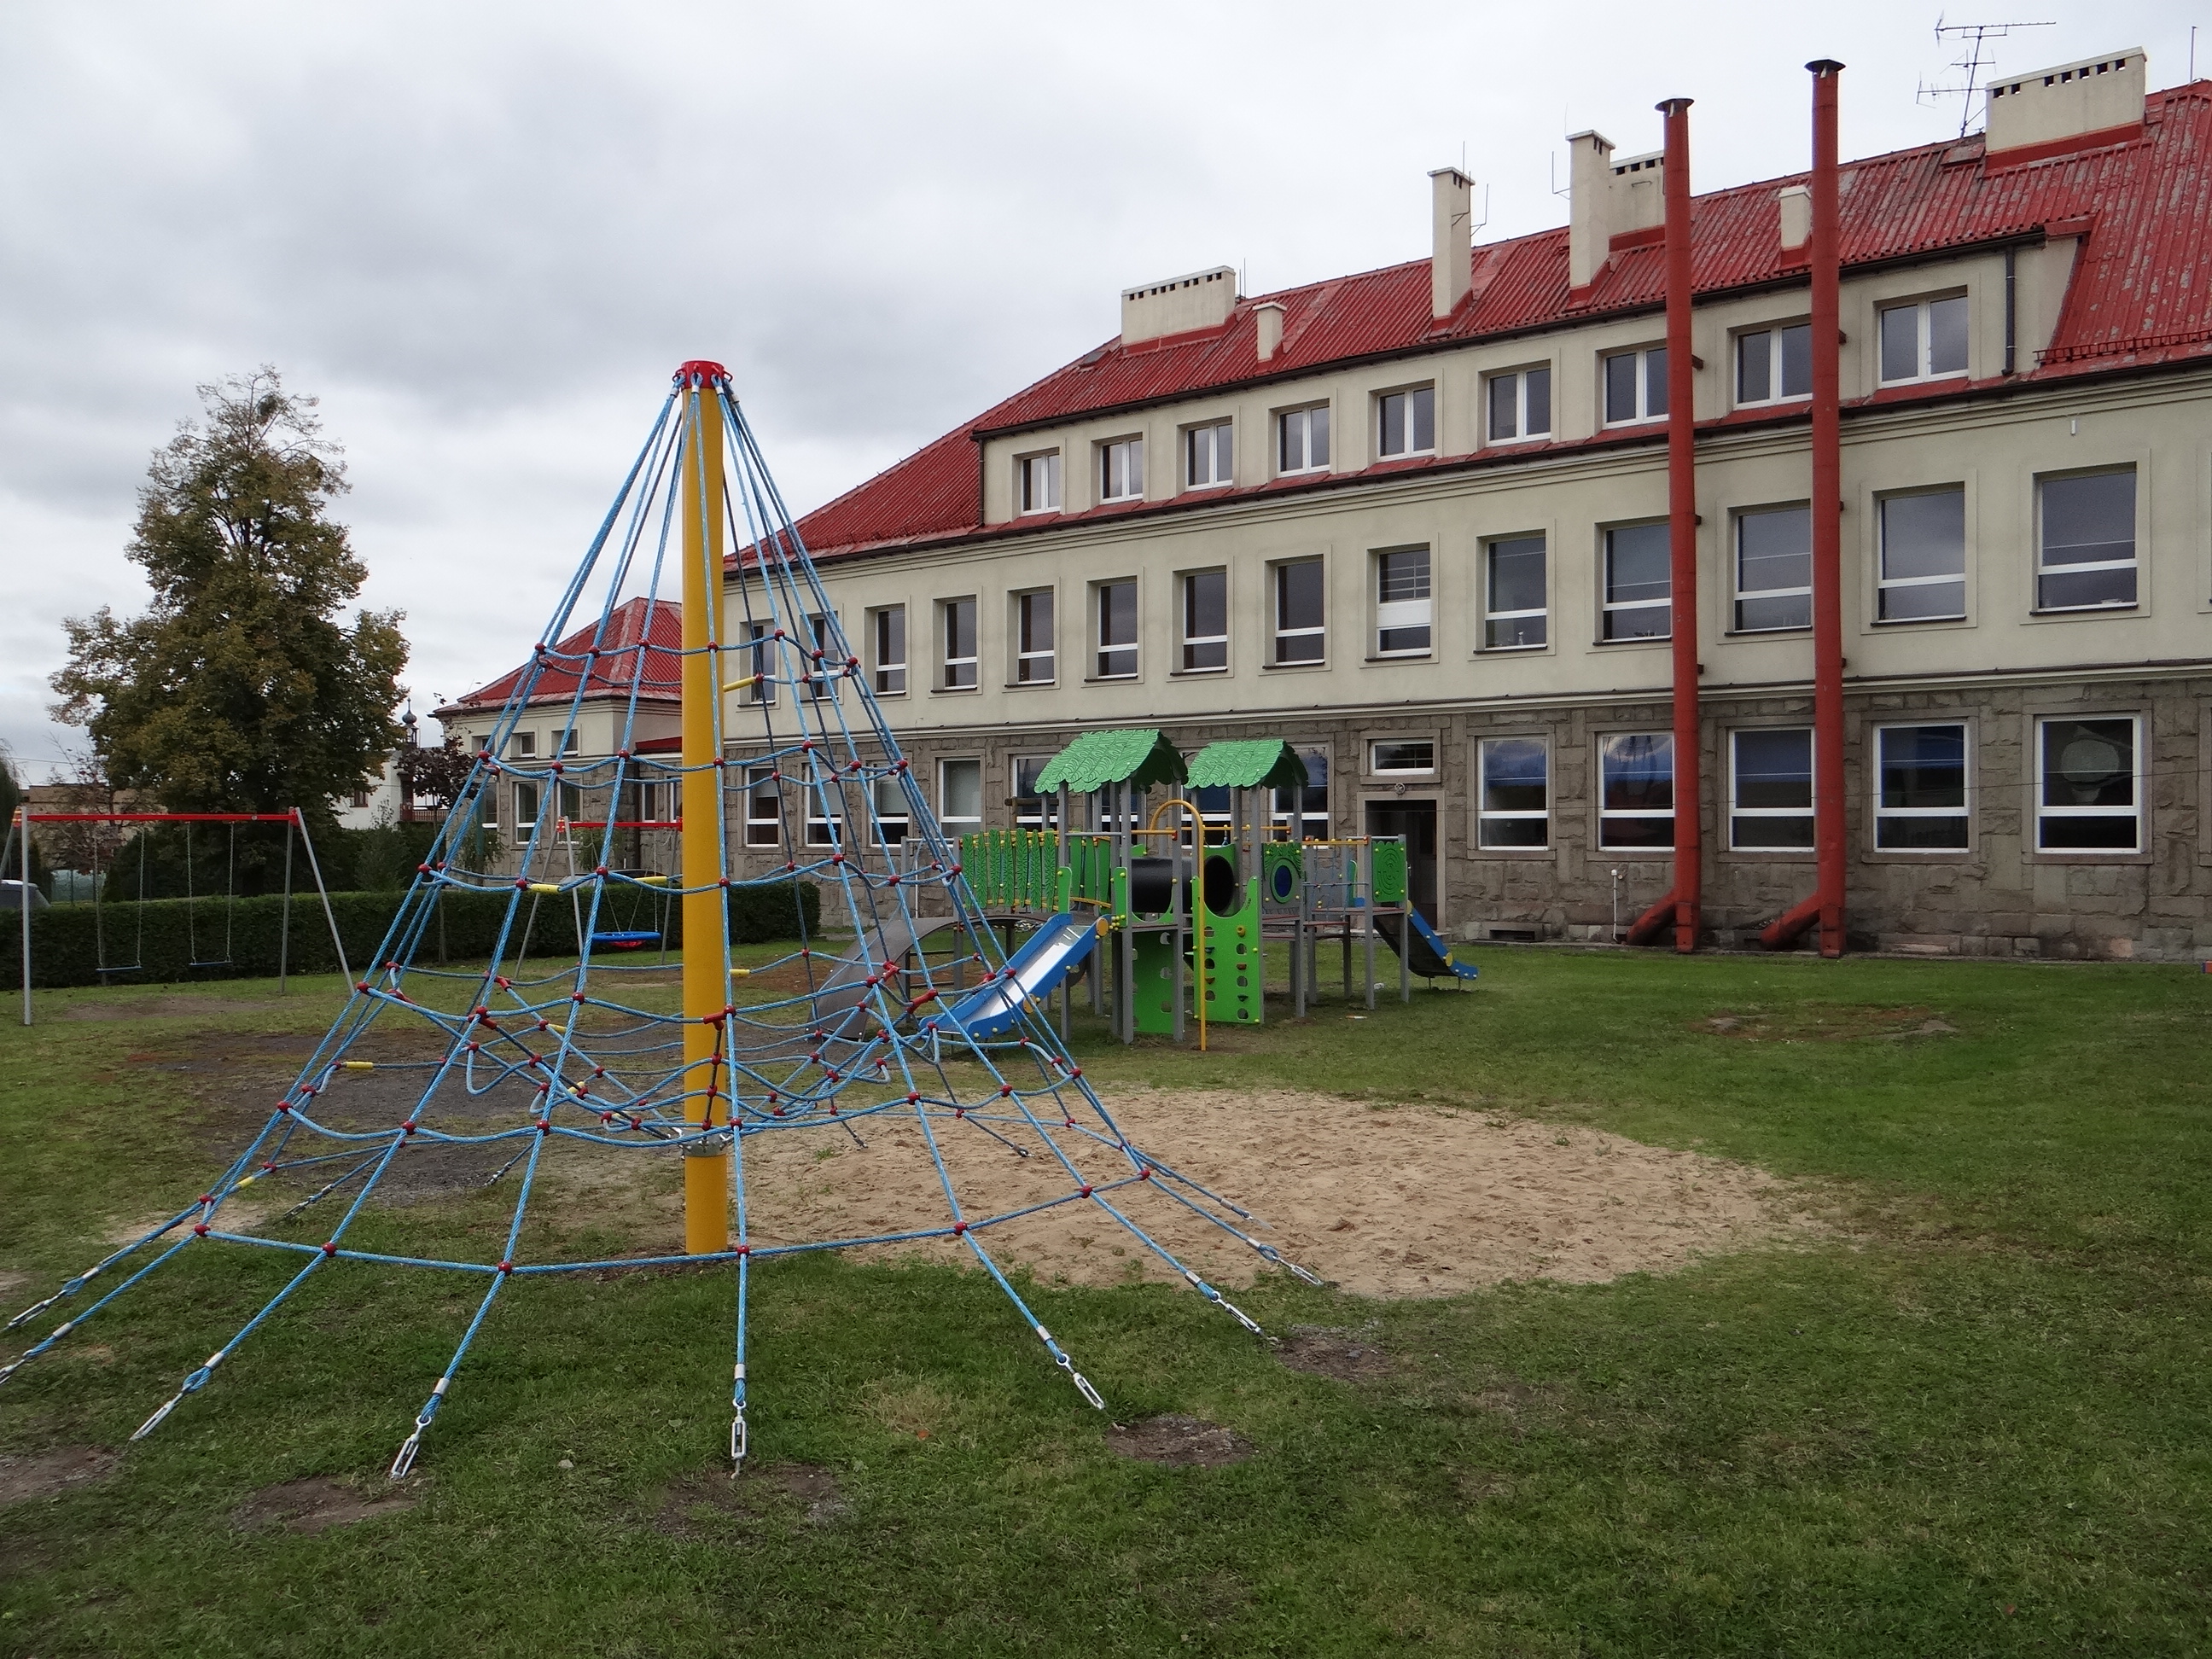 
Ogólnodostępny plac zabaw przy Szkole Podstawowej w Pogwizdowie po modernizacji (3). Widoczna część urządzeń placu. Z tyłu budynek szkolny (skrzydło północne).
